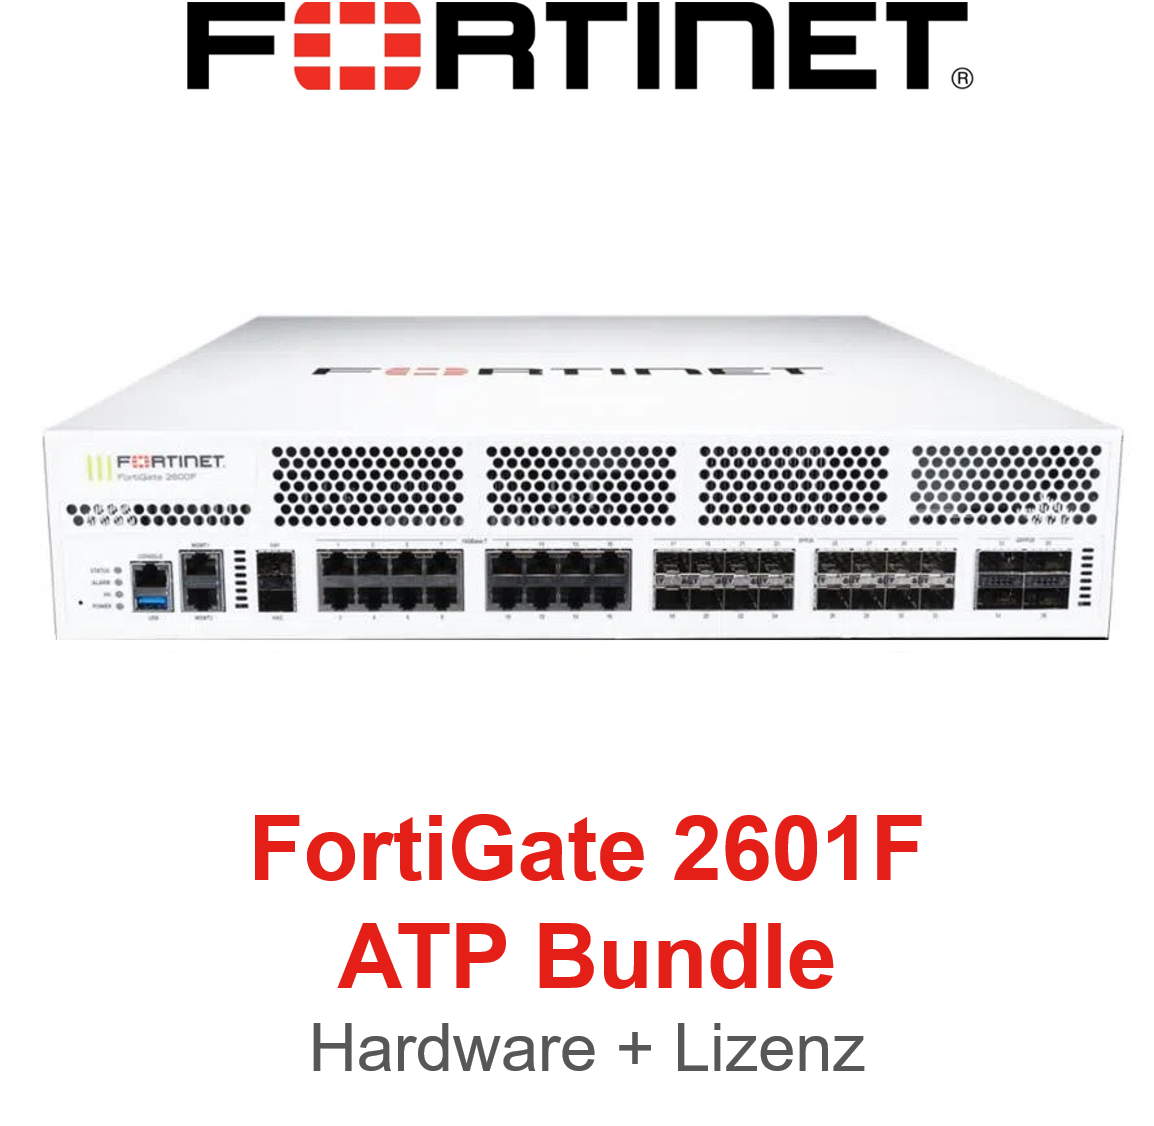 Fortinet FortiGate 2601F - ATP Bundle (Hardware + Lizenz)